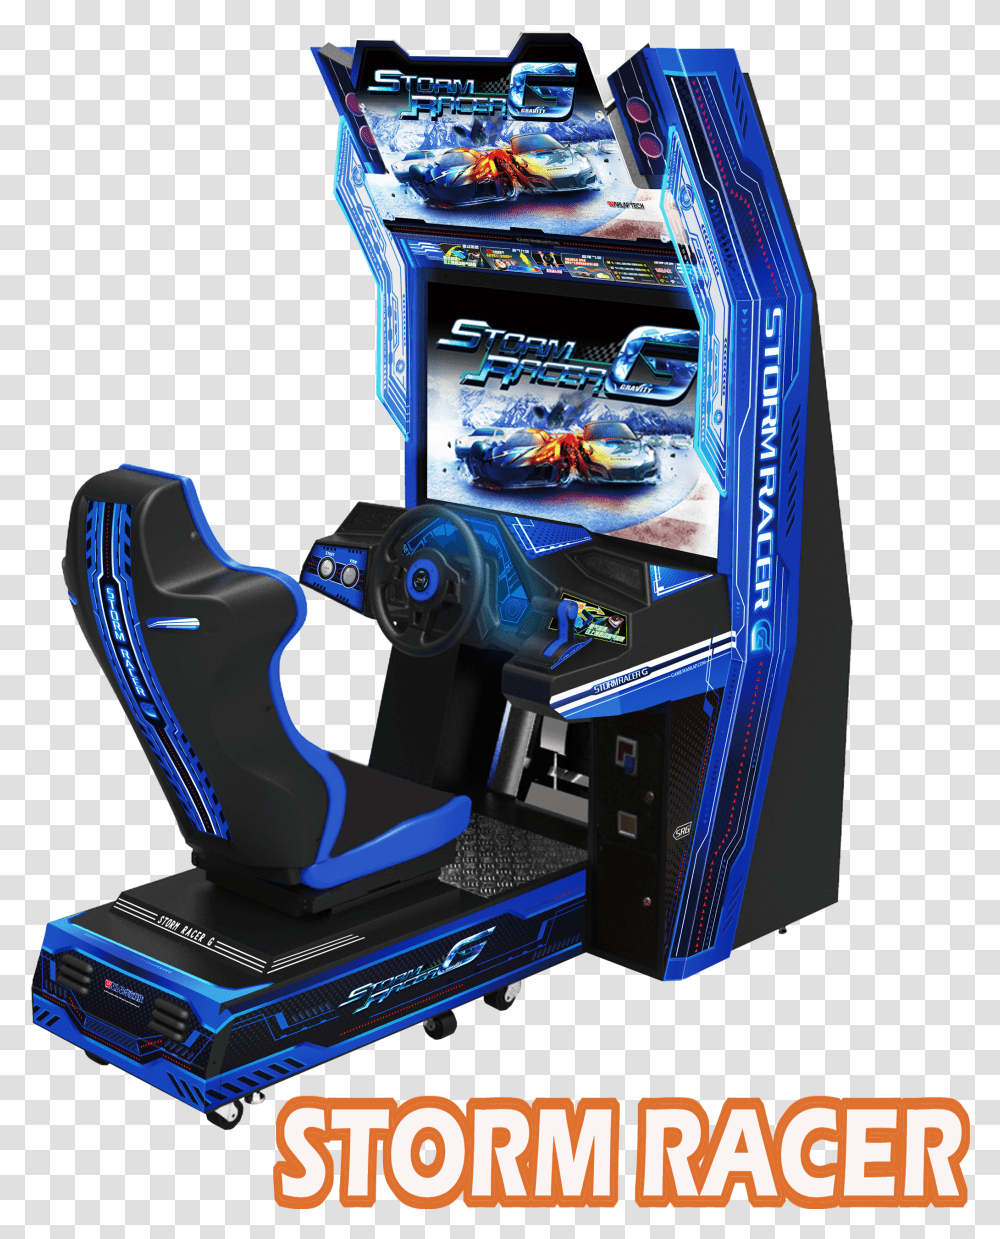 Storm Racer G Arcade Image Car Racing Arcade Games Transparent Png